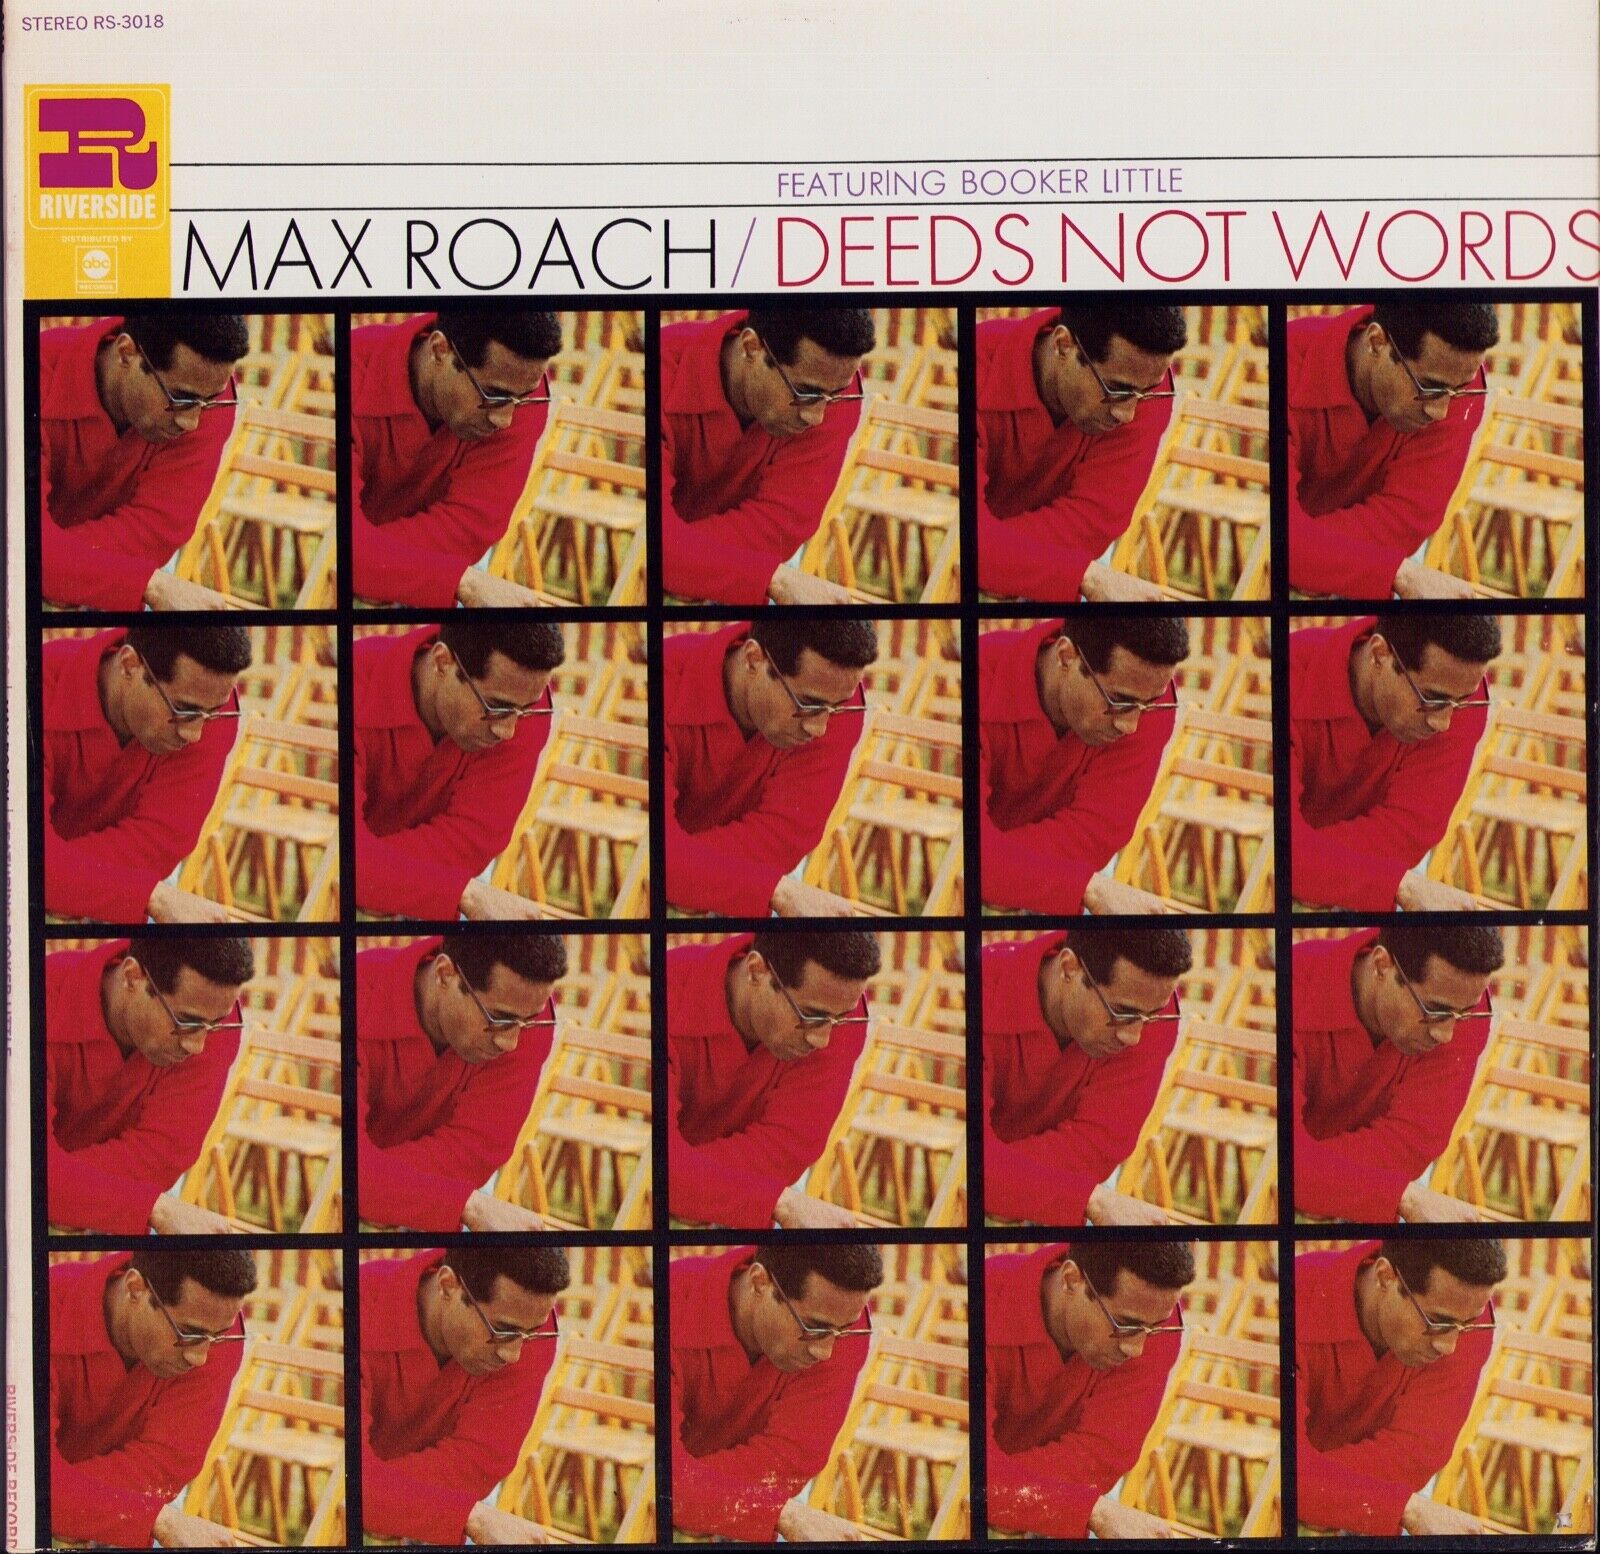 Max Roach Featuring Booker Little ‎- Deeds Not Words Vinyl LP US